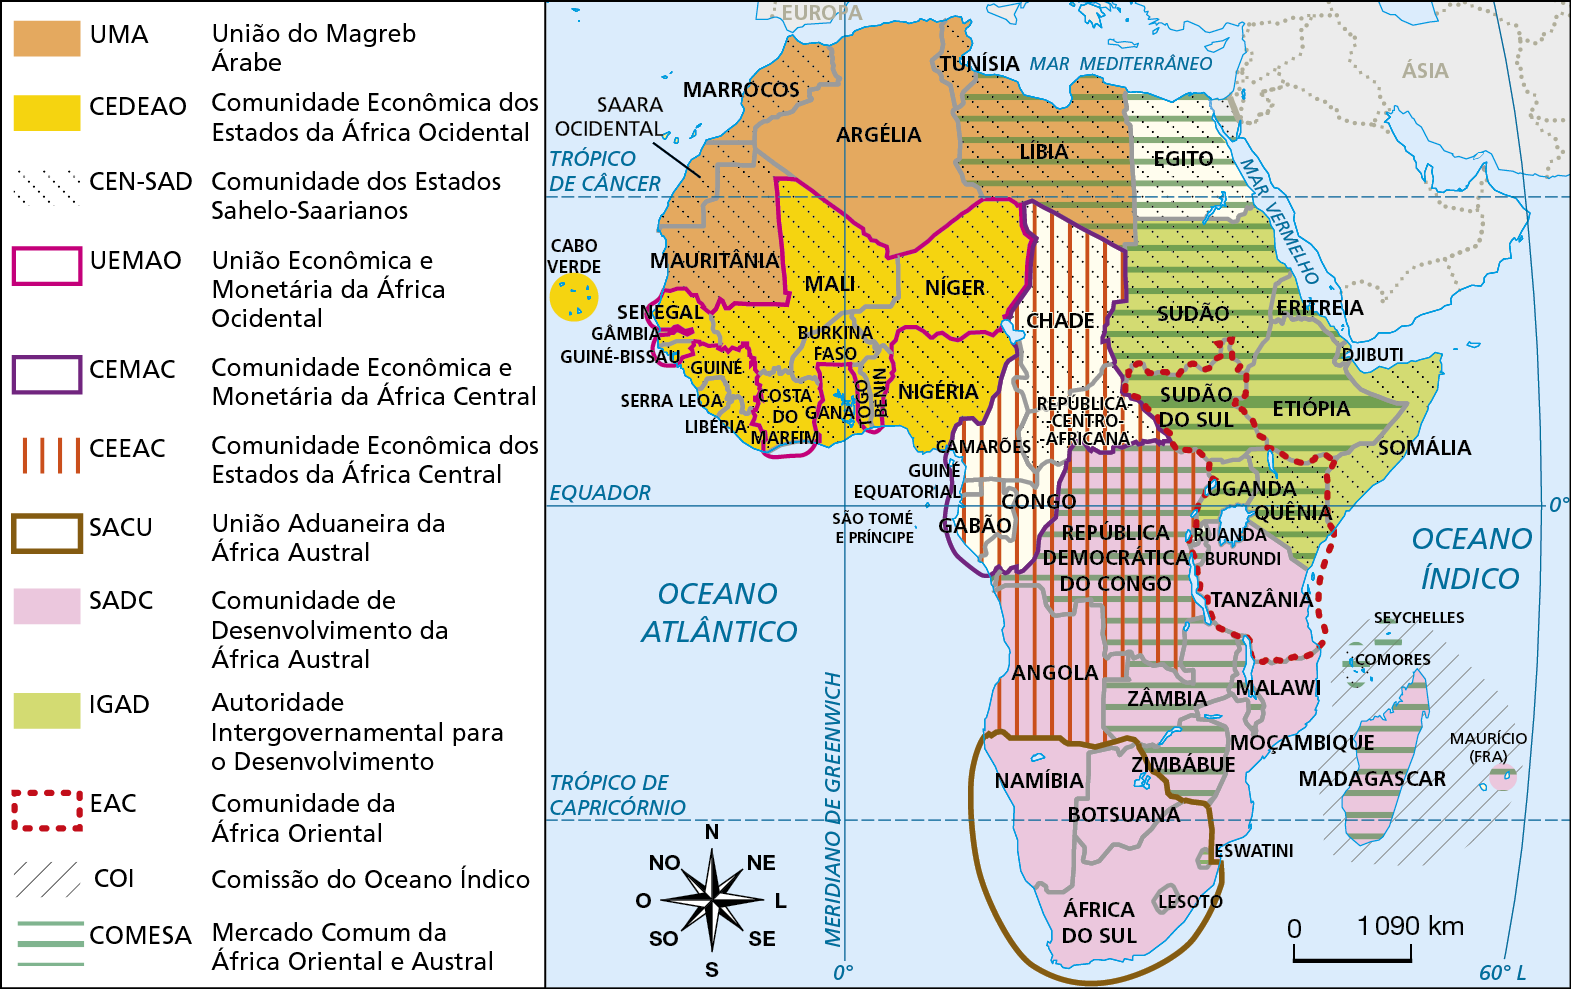 Mapa. África: blocos regionais – 2017. Mapa da África mostrando a distribuição dos blocos regionais do continente. UMA – União do Magreb Árabe: Mauritânia, Saara Ocidental, Marrocos, Argélia e Líbia. CEDEAO – Comunidade Econômica dos Estados da África Ocidental: Cabo Verde, Senegal, Gâmbia, Guiné-Bissau, Guiné, Serra Leoa, Libéria, Costa do Marfim, Burkina Faso, Nigéria, Togo e Níger. CEN-SAD – Comunidade dos Estados Sahelo-Saarianos: Mauritânia, Saara ocidental, Marrocos, Senegal, Guiné, Serra Leoa, Mali, Costa do Marfim, Burkina Faso, Nigéria, Níger, Líbia, Egito, Chade, República Centro-Africana, Sudão, Somália e Quênia. UEMAO – União Econômica e Monetária da África Ocidental: Senegal, Guiné-Bissau, Costa do Marfim, Burkina Faso, Níger e Mali. CEMAC – Comunidade Econômica e Monetária da África Central: Gabão, Congo, Camarões, República Centro-Africana e Chade. CEEAC – Comunidade Econômica dos Estados da África Central: Chade, República Centro-Africana, Camarões, Gabão, Congo, República Democrática do Congo e Angola. SACU – União Aduaneira da África Austral: Namíbia, Botswana, África do Sul, Lesoto e Eswatini. SADC – Comunidade de Desenvolvimento da África Austral: República Democrática do Congo Angola, Tanzânia, Malawi, Zâmbia, Zimbábue, Moçambique, Botswana, Namíbia, África do Sul e Madagascar. IGAD – Autoridade Intergovernamental para o Desenvolvimento: Sudão, Sudão do Sul, Uganda, Quênia, Somália, Etiópia e Eritreia. EAC – Comunidade da África Oriental: Tanzânia, Ruanda, Burundi, Quênia, Uganda, Sudão do Sul. COI – Comissão do Oceano Índico: Madagascar, Comores, Seychelles, Maurício (França). COMESA – Mercado Comum da África Oriental e Austral: Zimbábue, Zâmbia, República Democrática do Congo, Sudão do Sul, Uganda, Quênia, Etiópia, Eritreia e Sudão. Na parte inferior, à esquerda, rosa dos ventos e escala de 0 a 1.090 quilômetros.